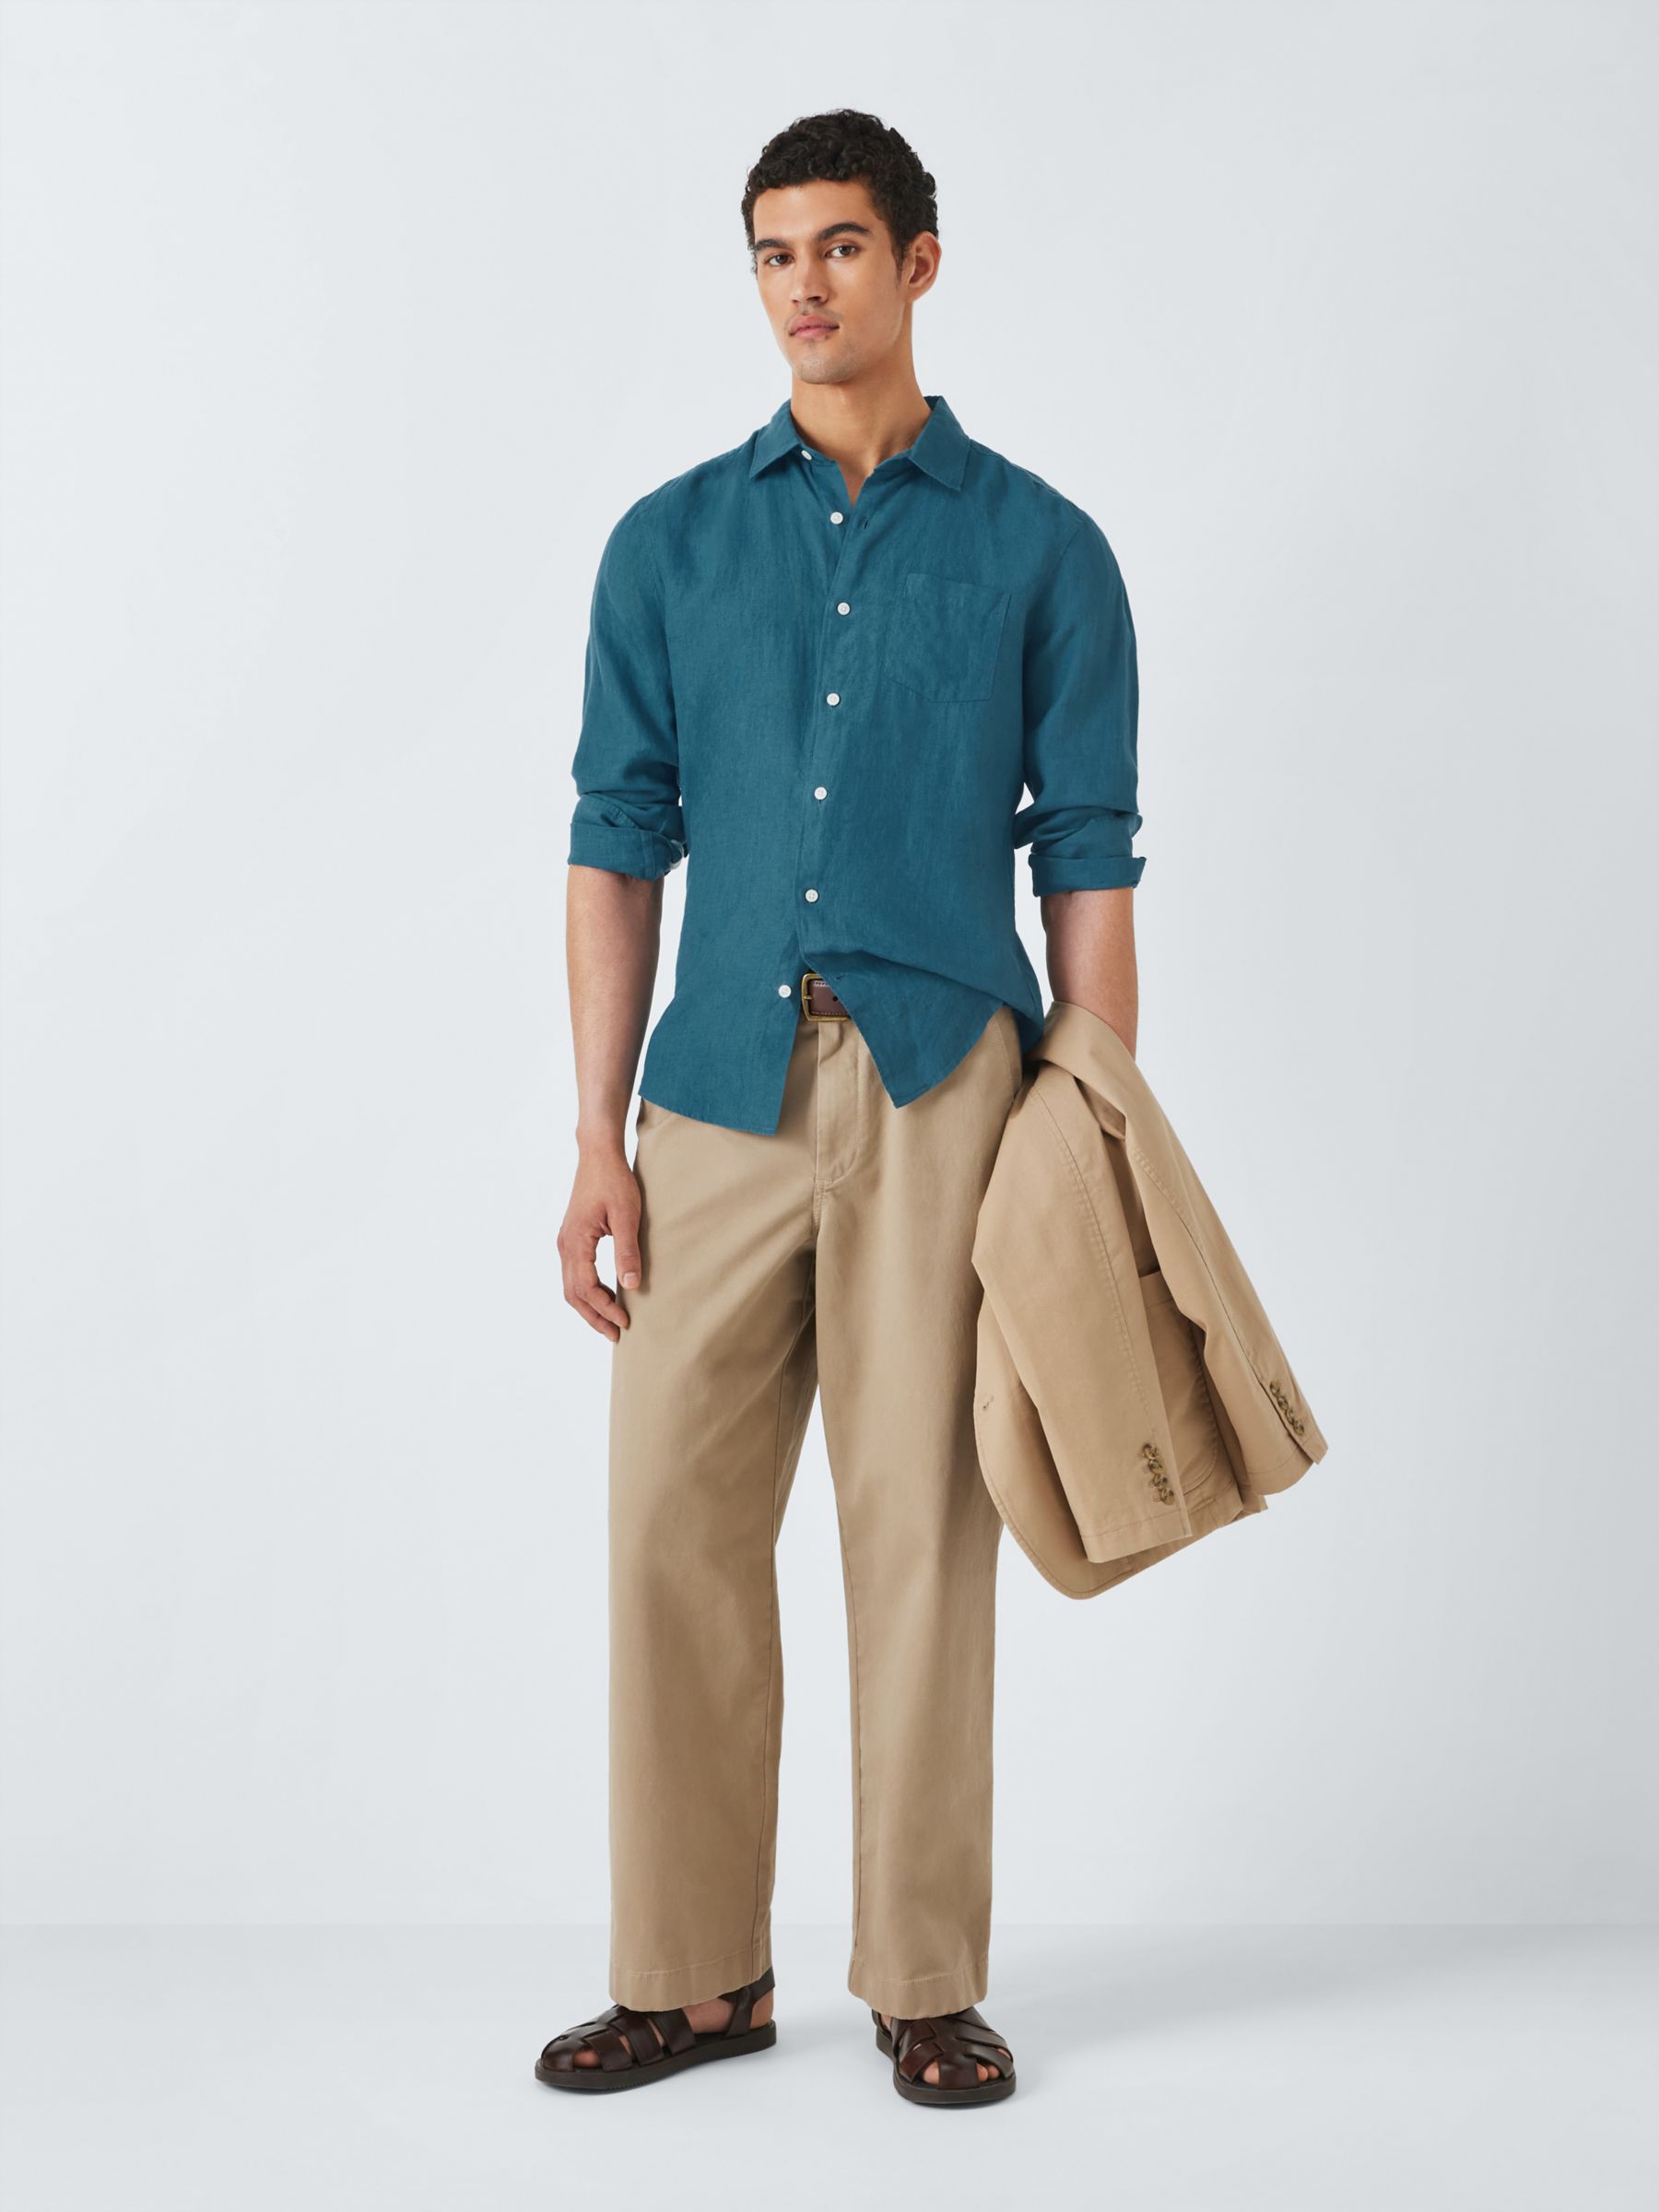 John Lewis Linen Long Sleeve Shirt, Mallard Blue, S